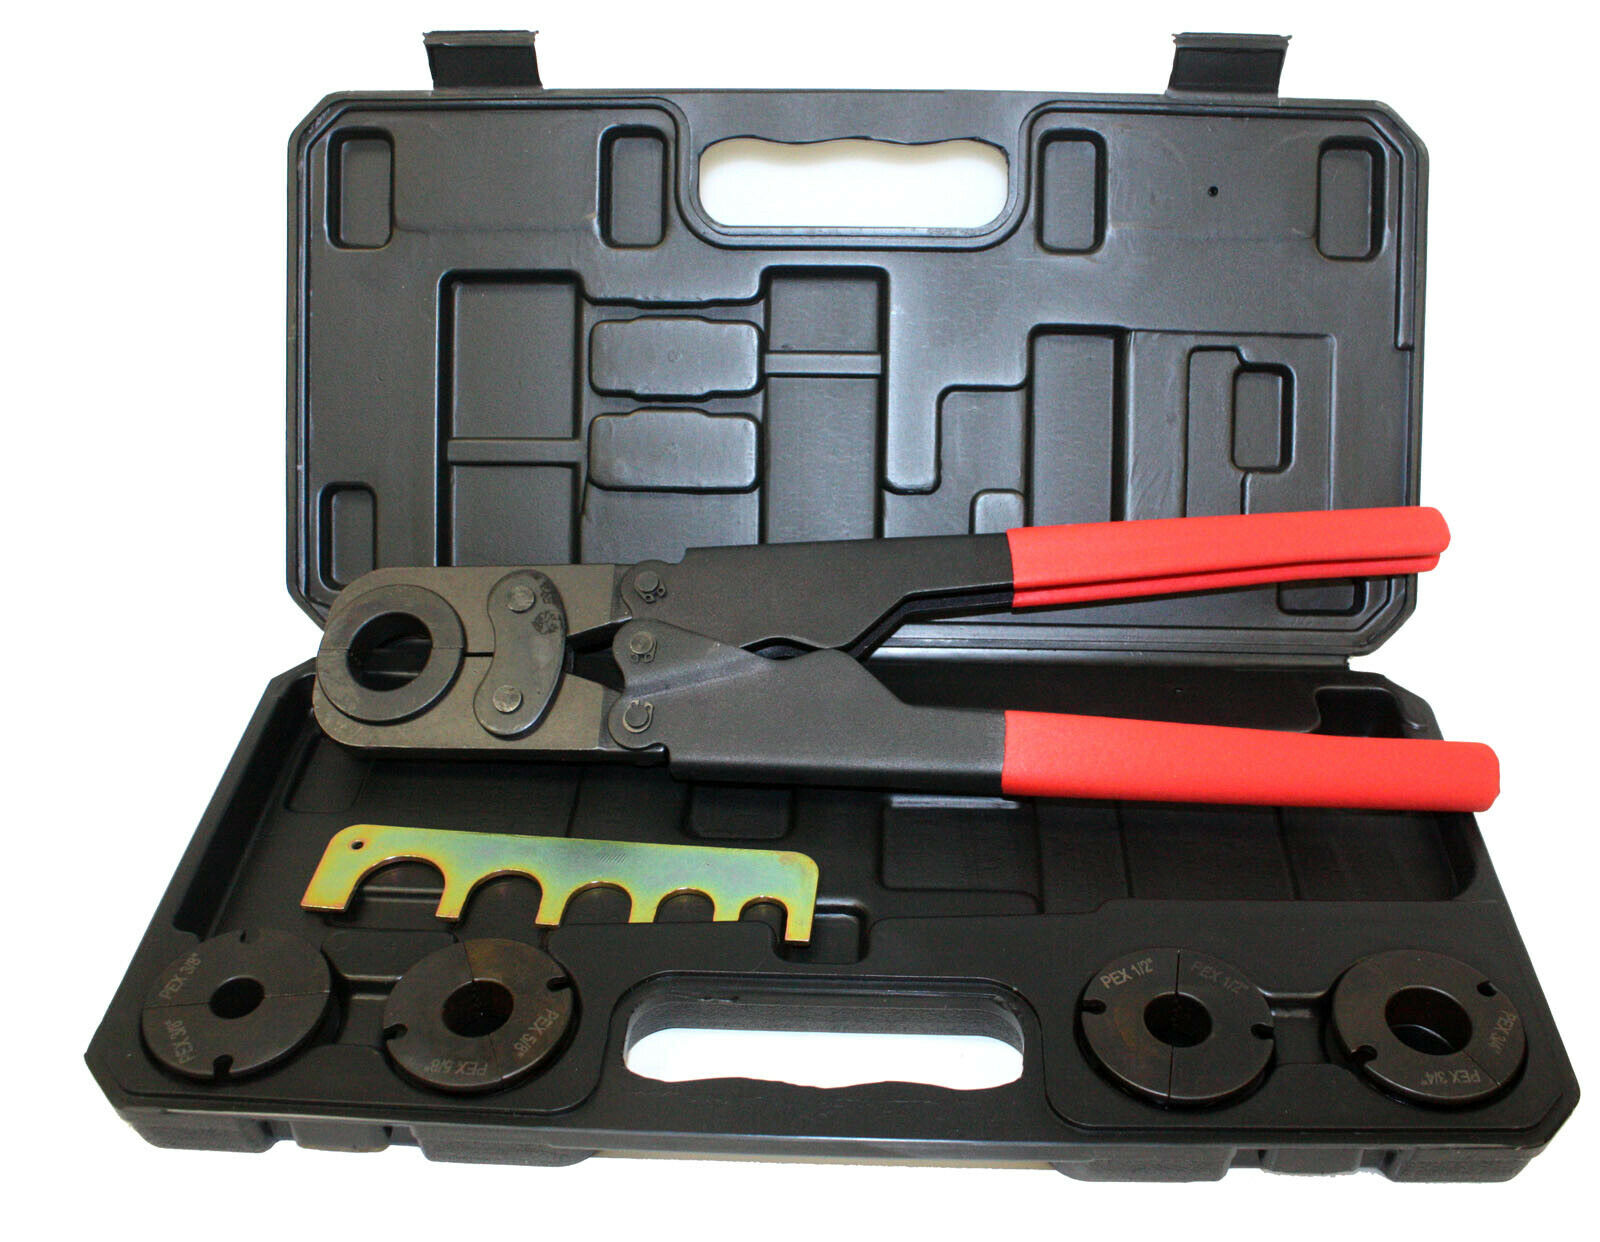 5/8" & 3/4" PEX Crimp Tool Kit with Decrimper for sizes 3/8" 1/2" 